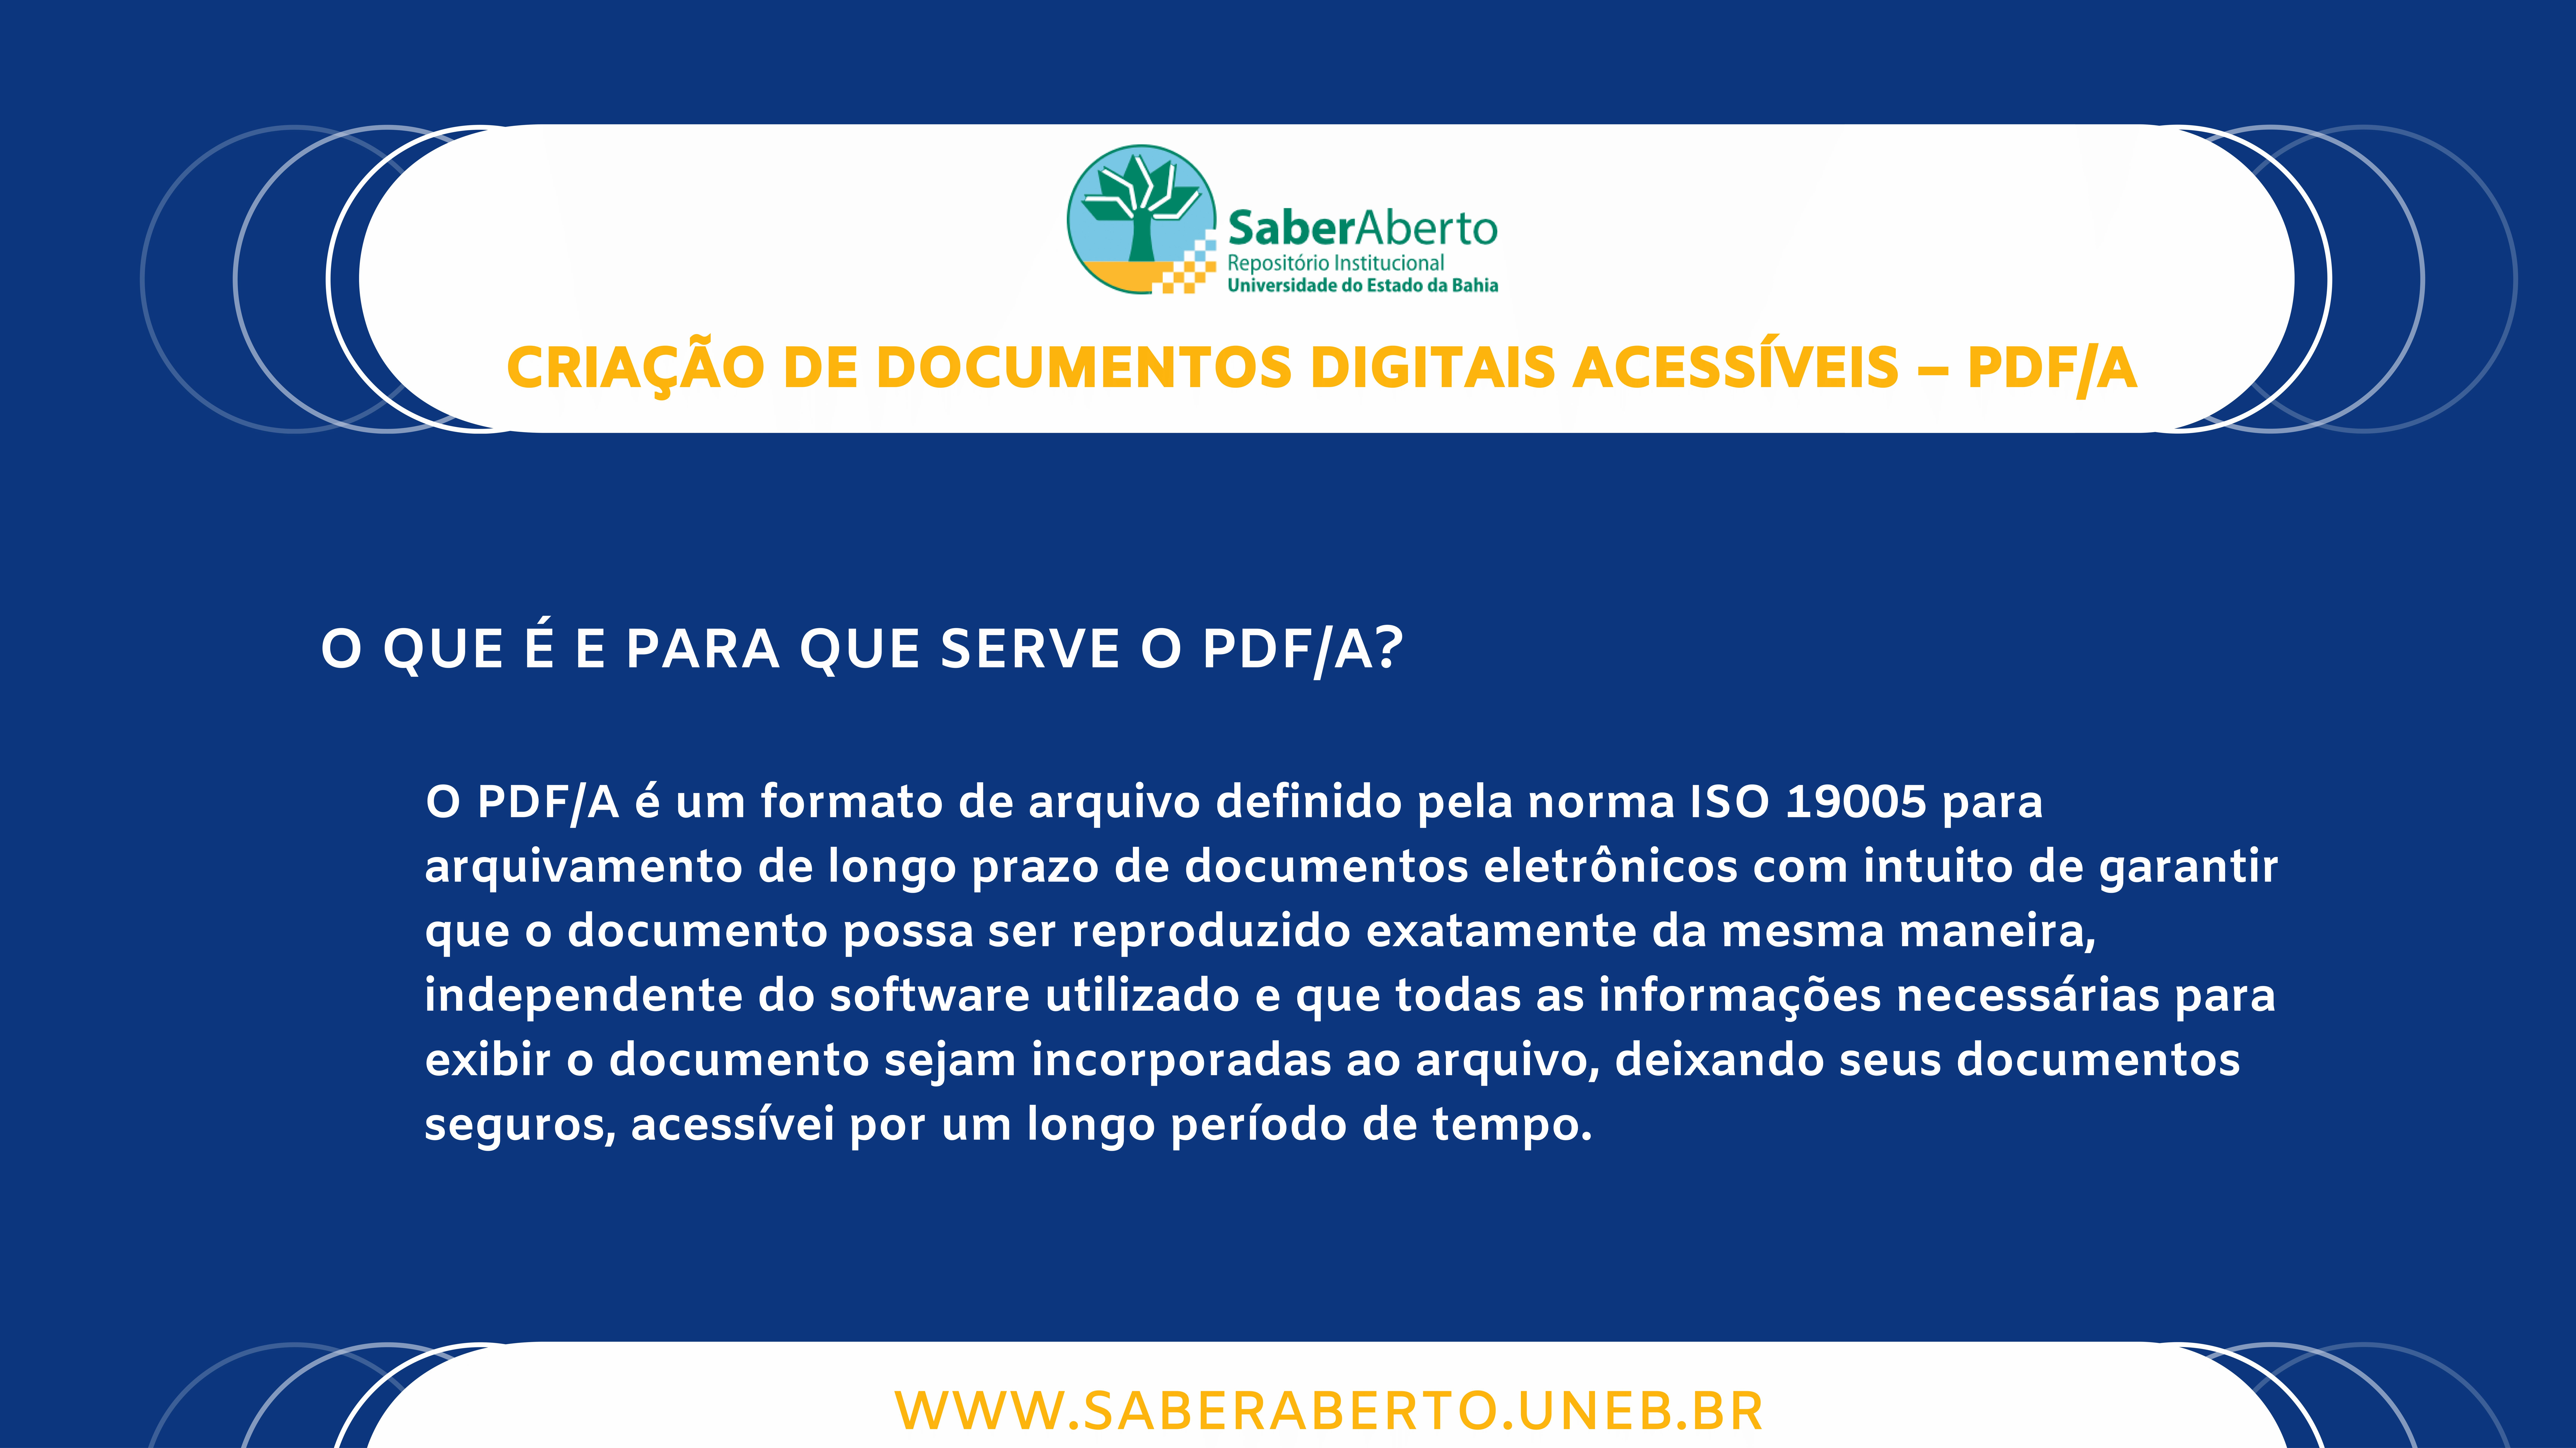 Criação de documentos digitais acessíveis - PDF/A. 